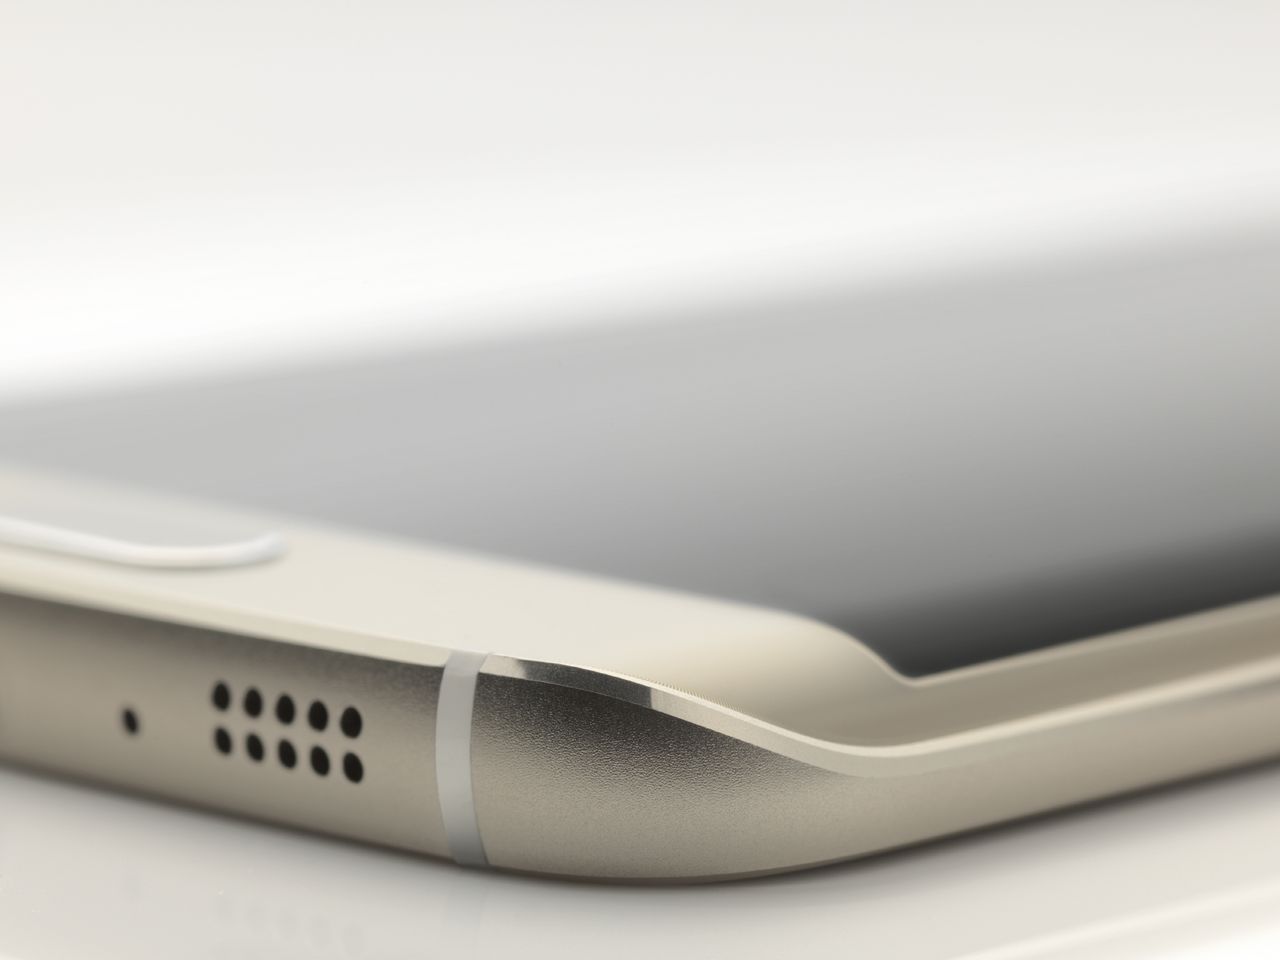 Jak może wyglądać Galaxy S7 edge? Zobacz koncept bazujący na patentach Samsunga